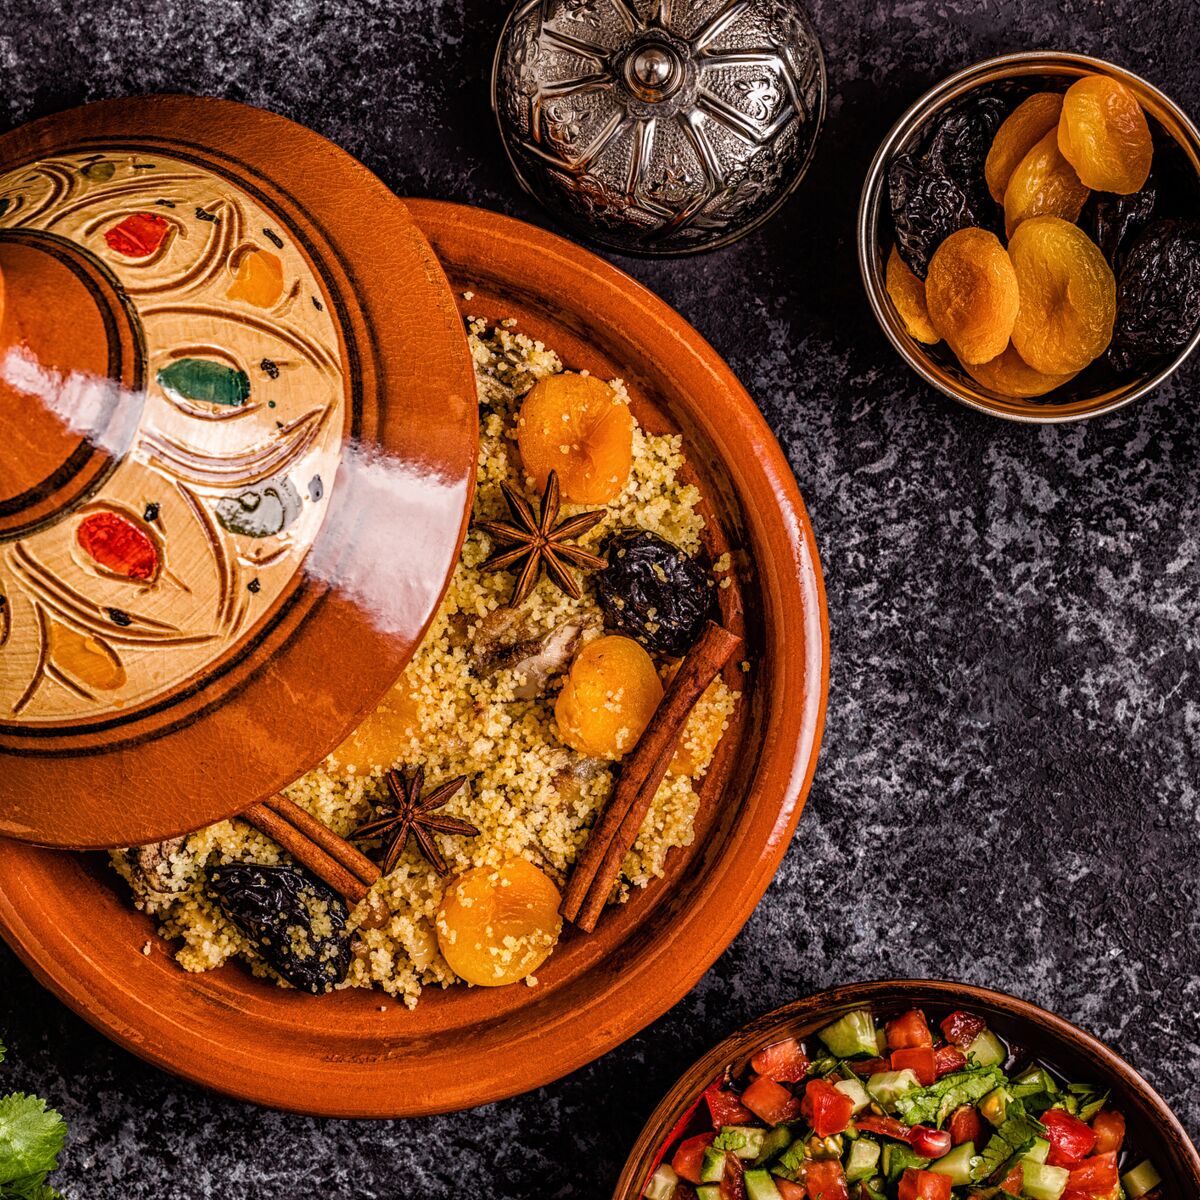 La vraie recette du couscous marocain à tester pour le Ramadan (et